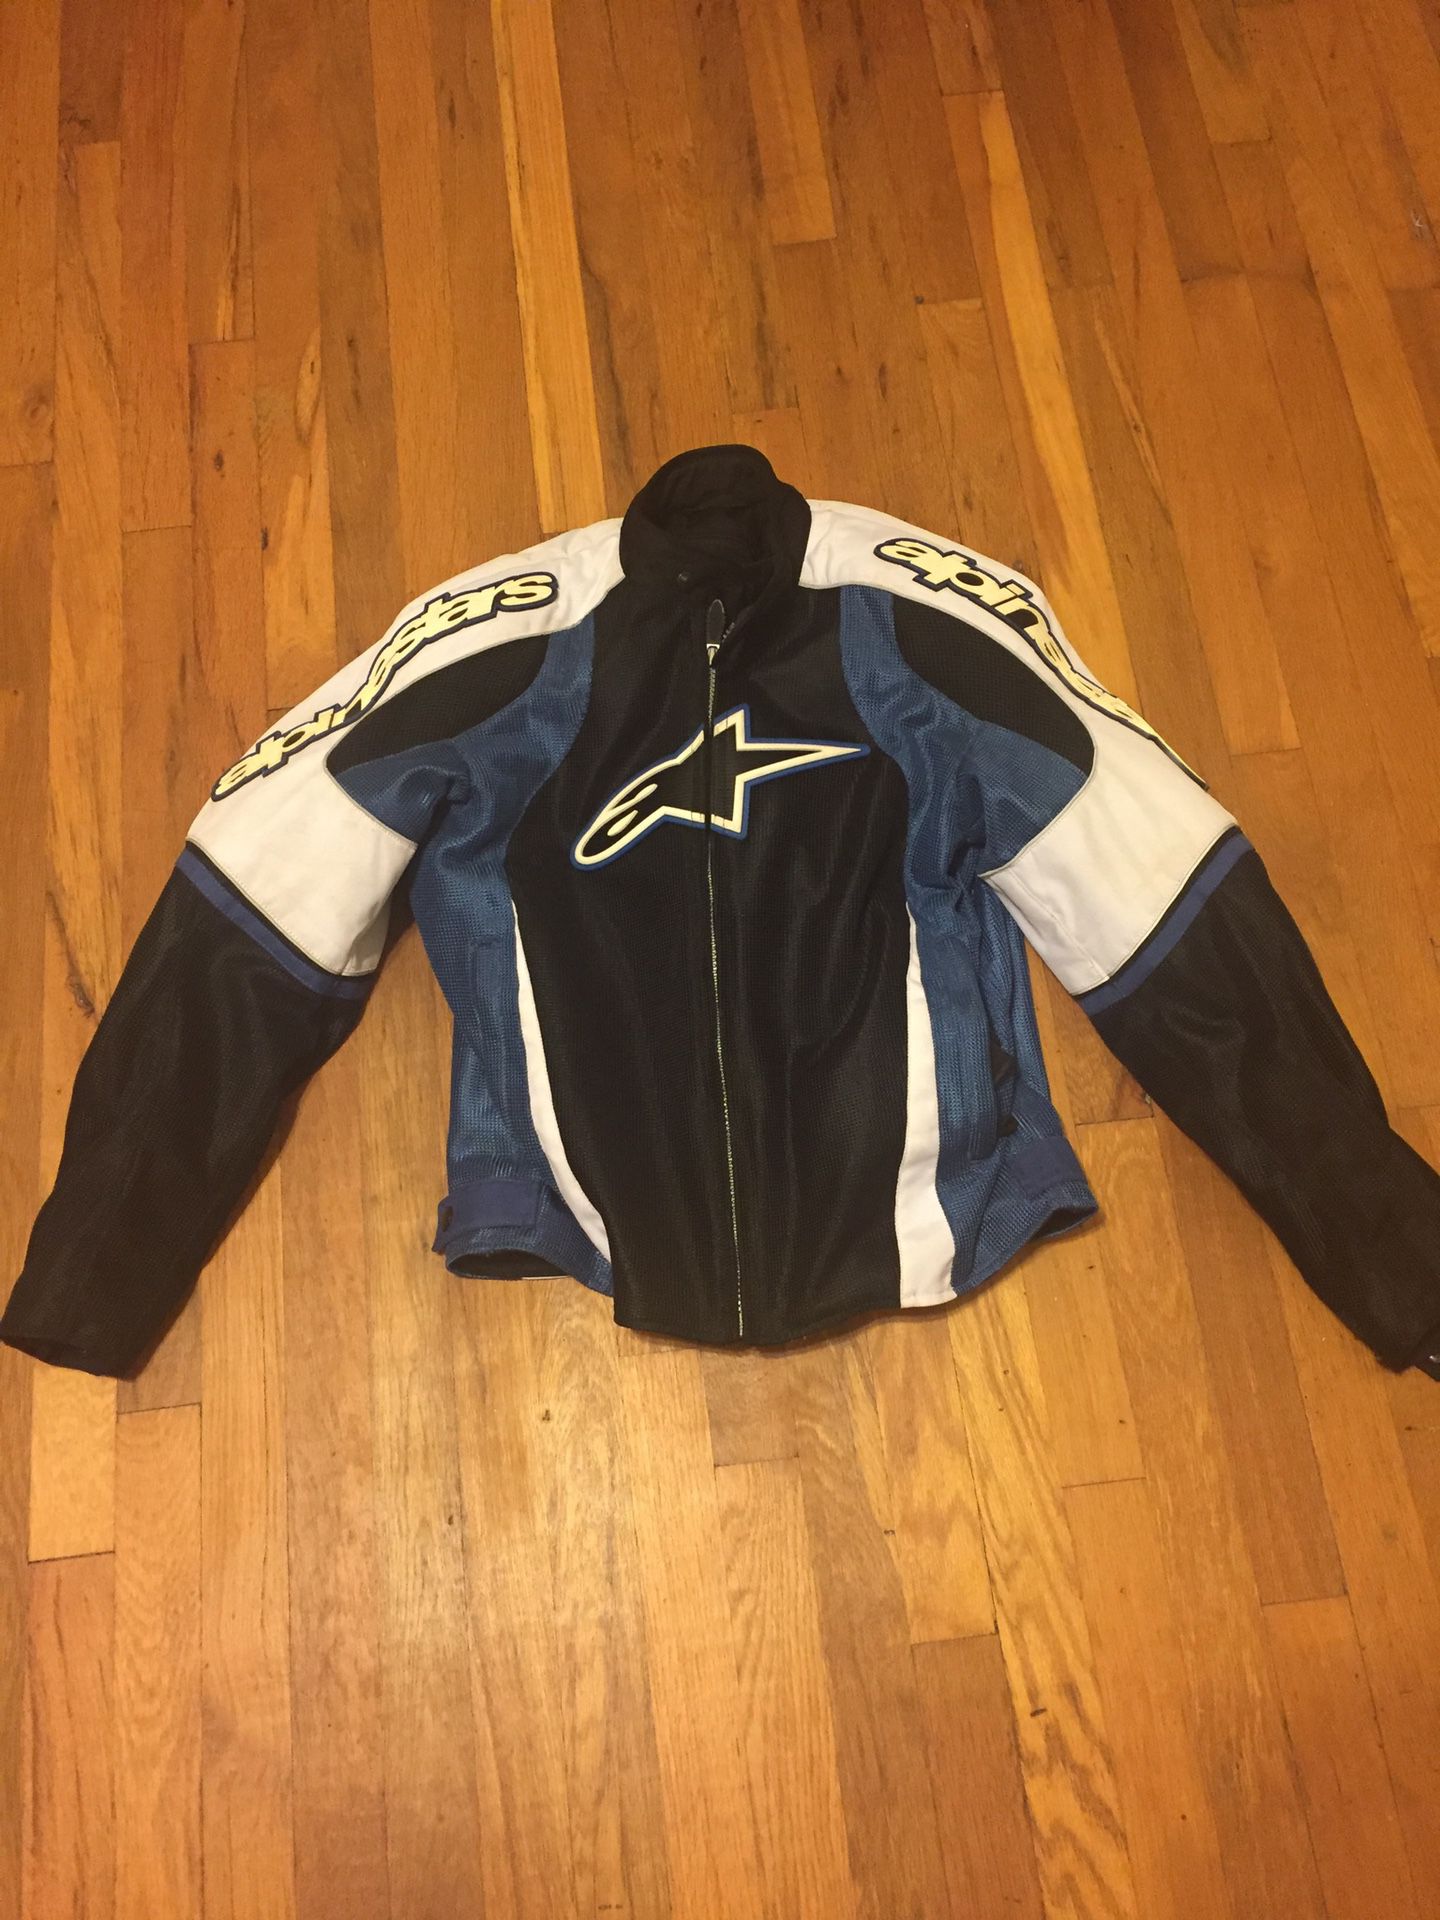 Motorcycle jacket size large